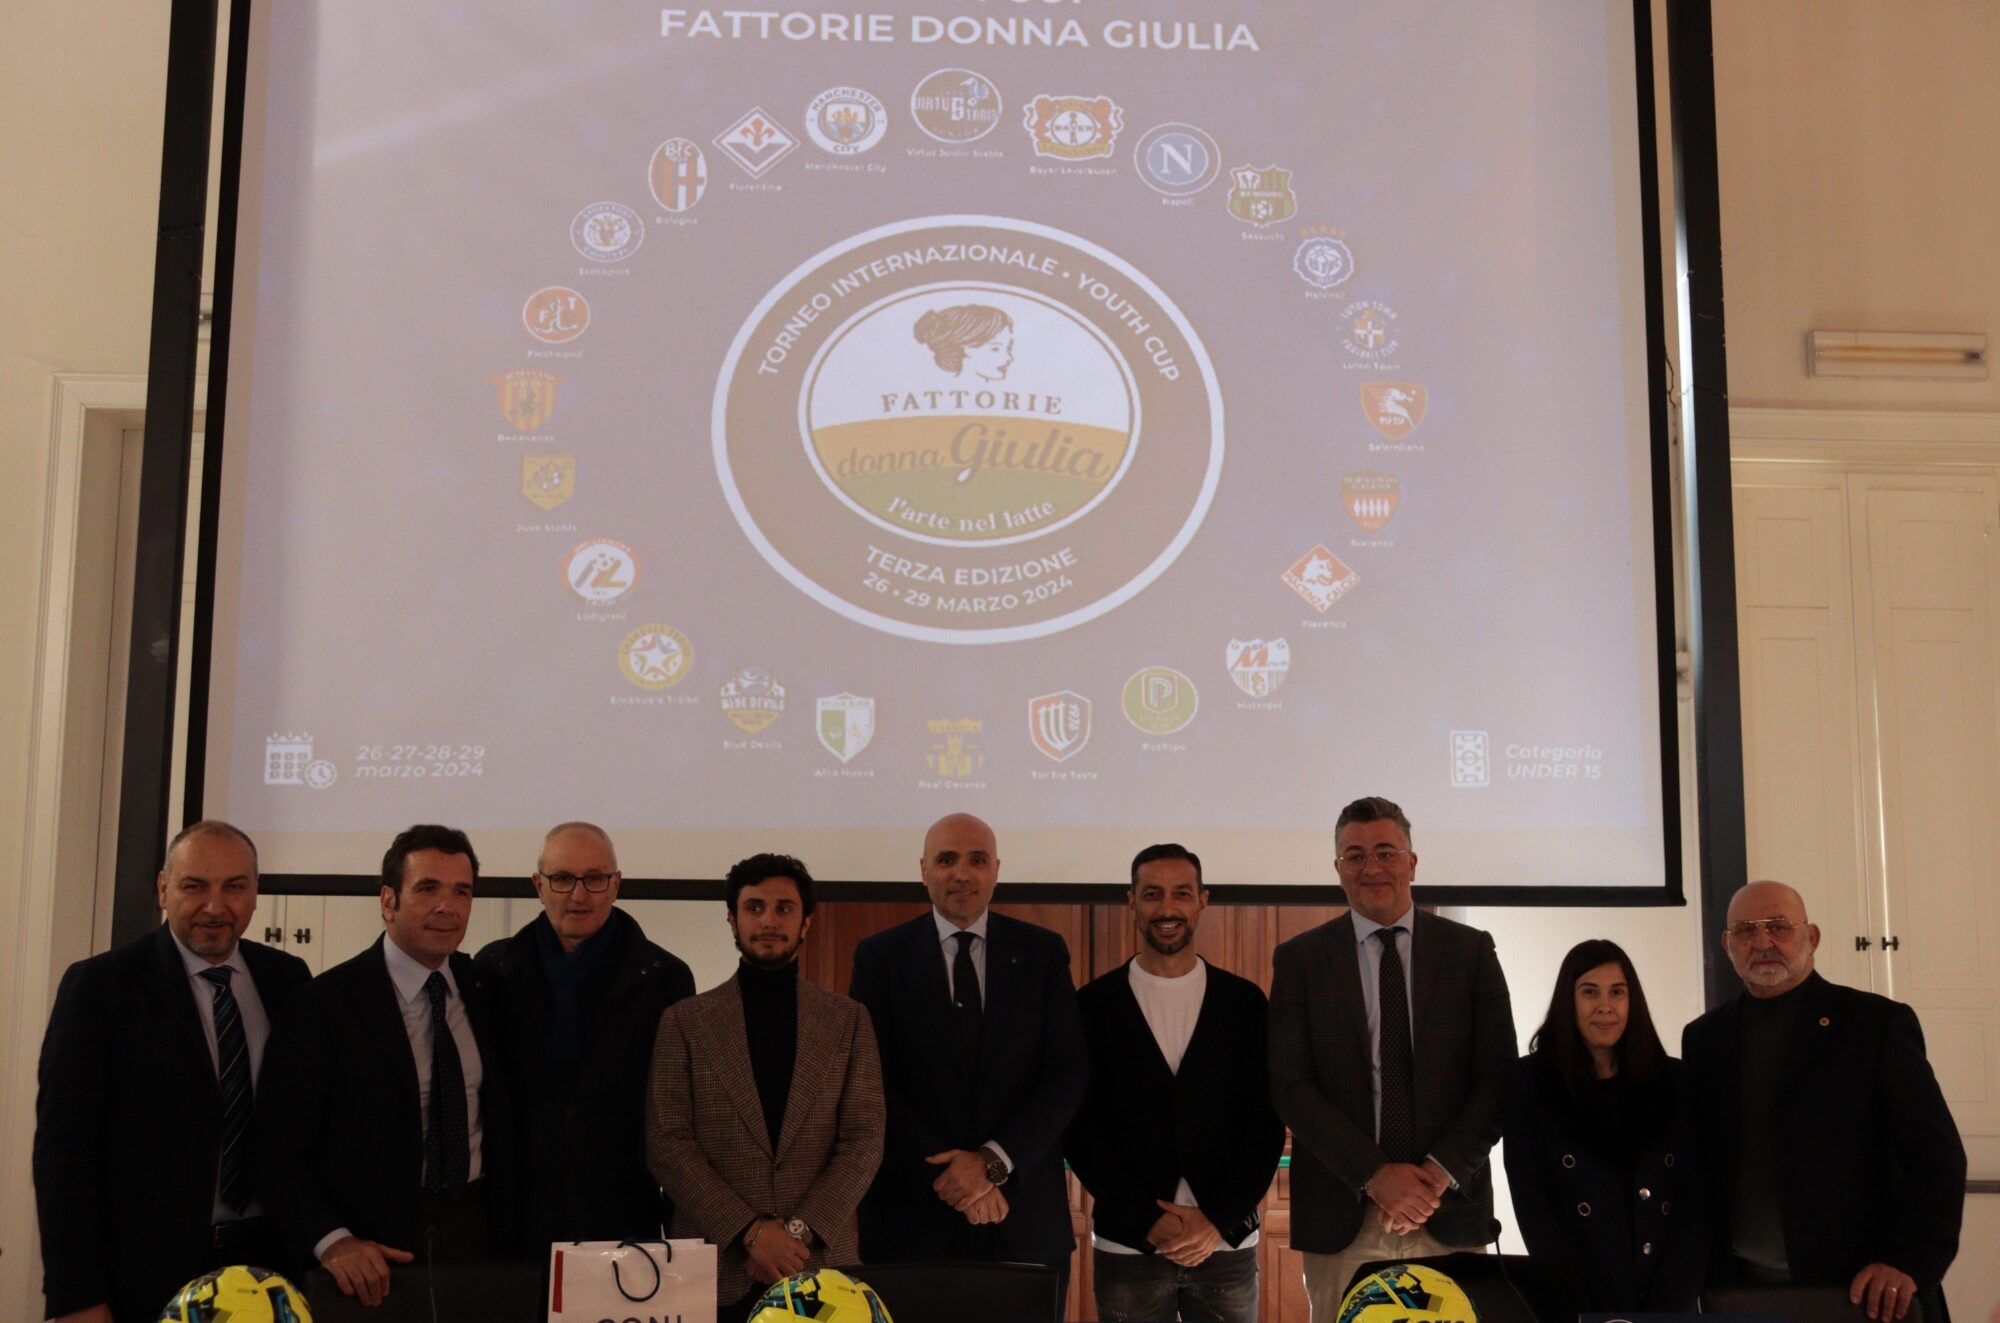 Foto presentazione terza edizione Youth Cup Fattorie Donna Giulia